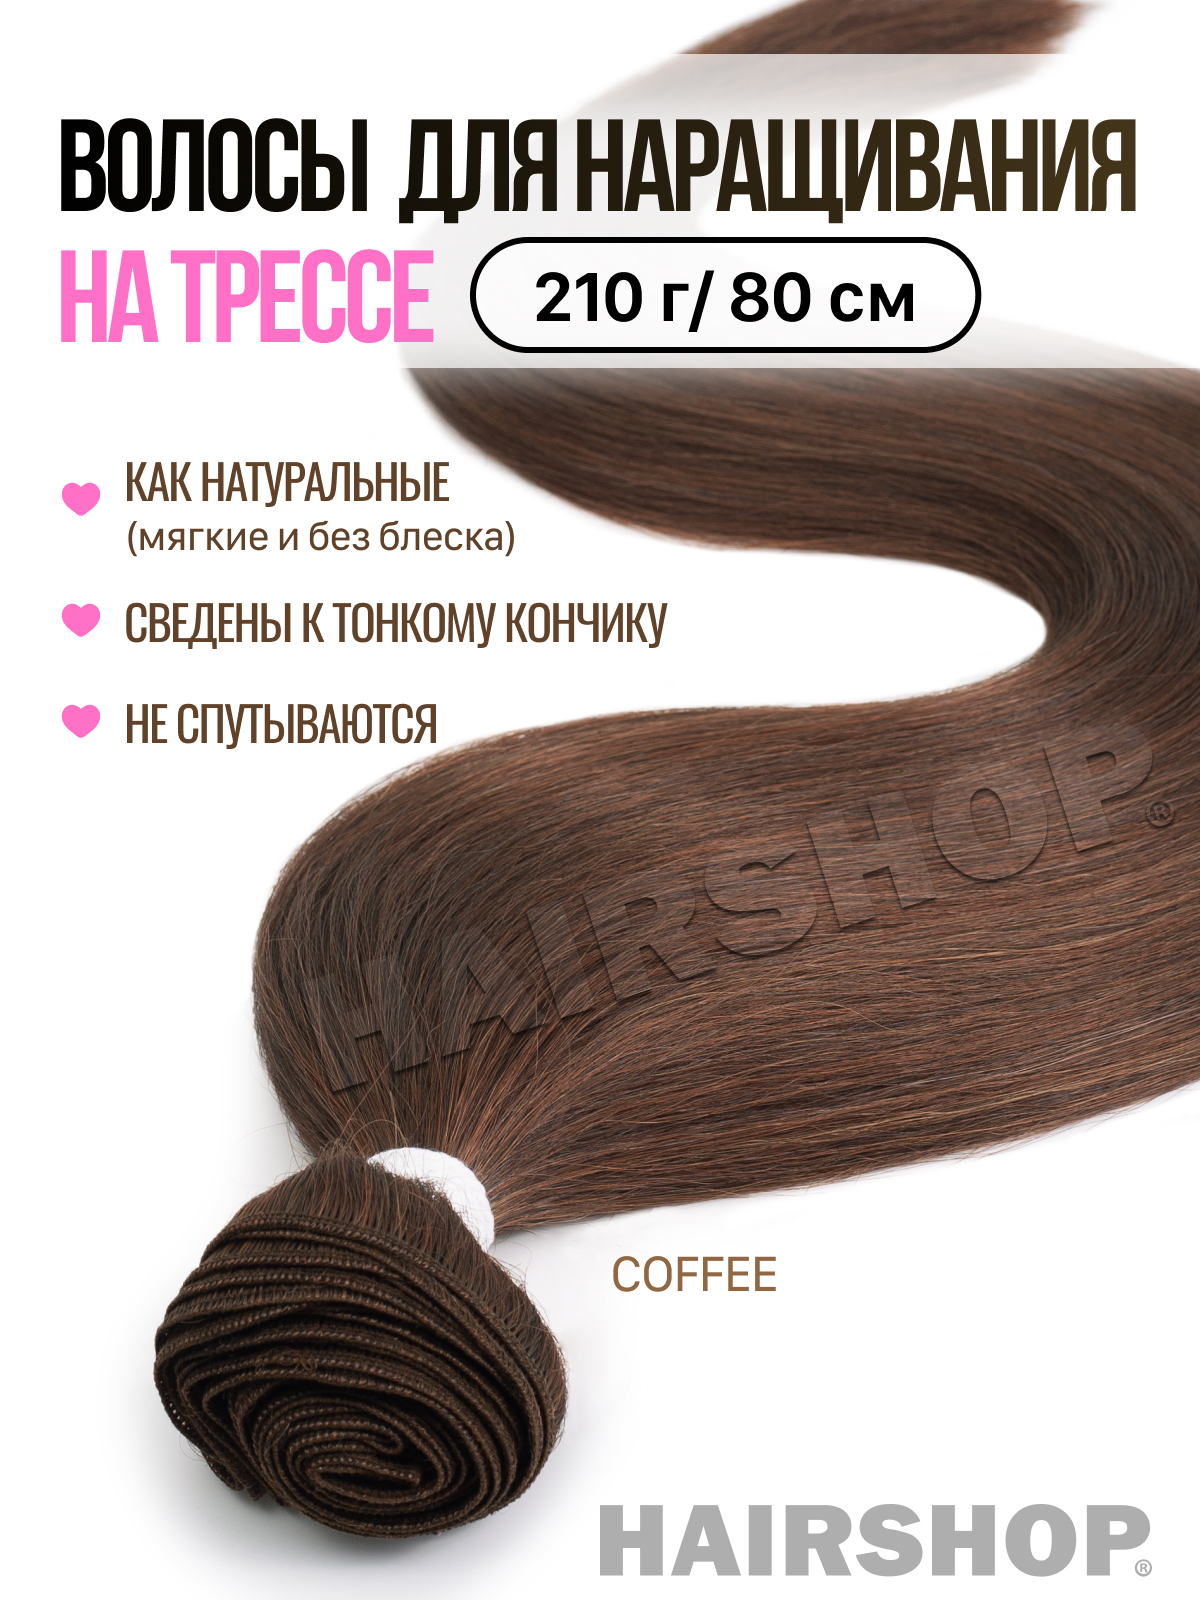 Термоволокно HAIRSHOP Вандер на трессах Coffee 210г 80см